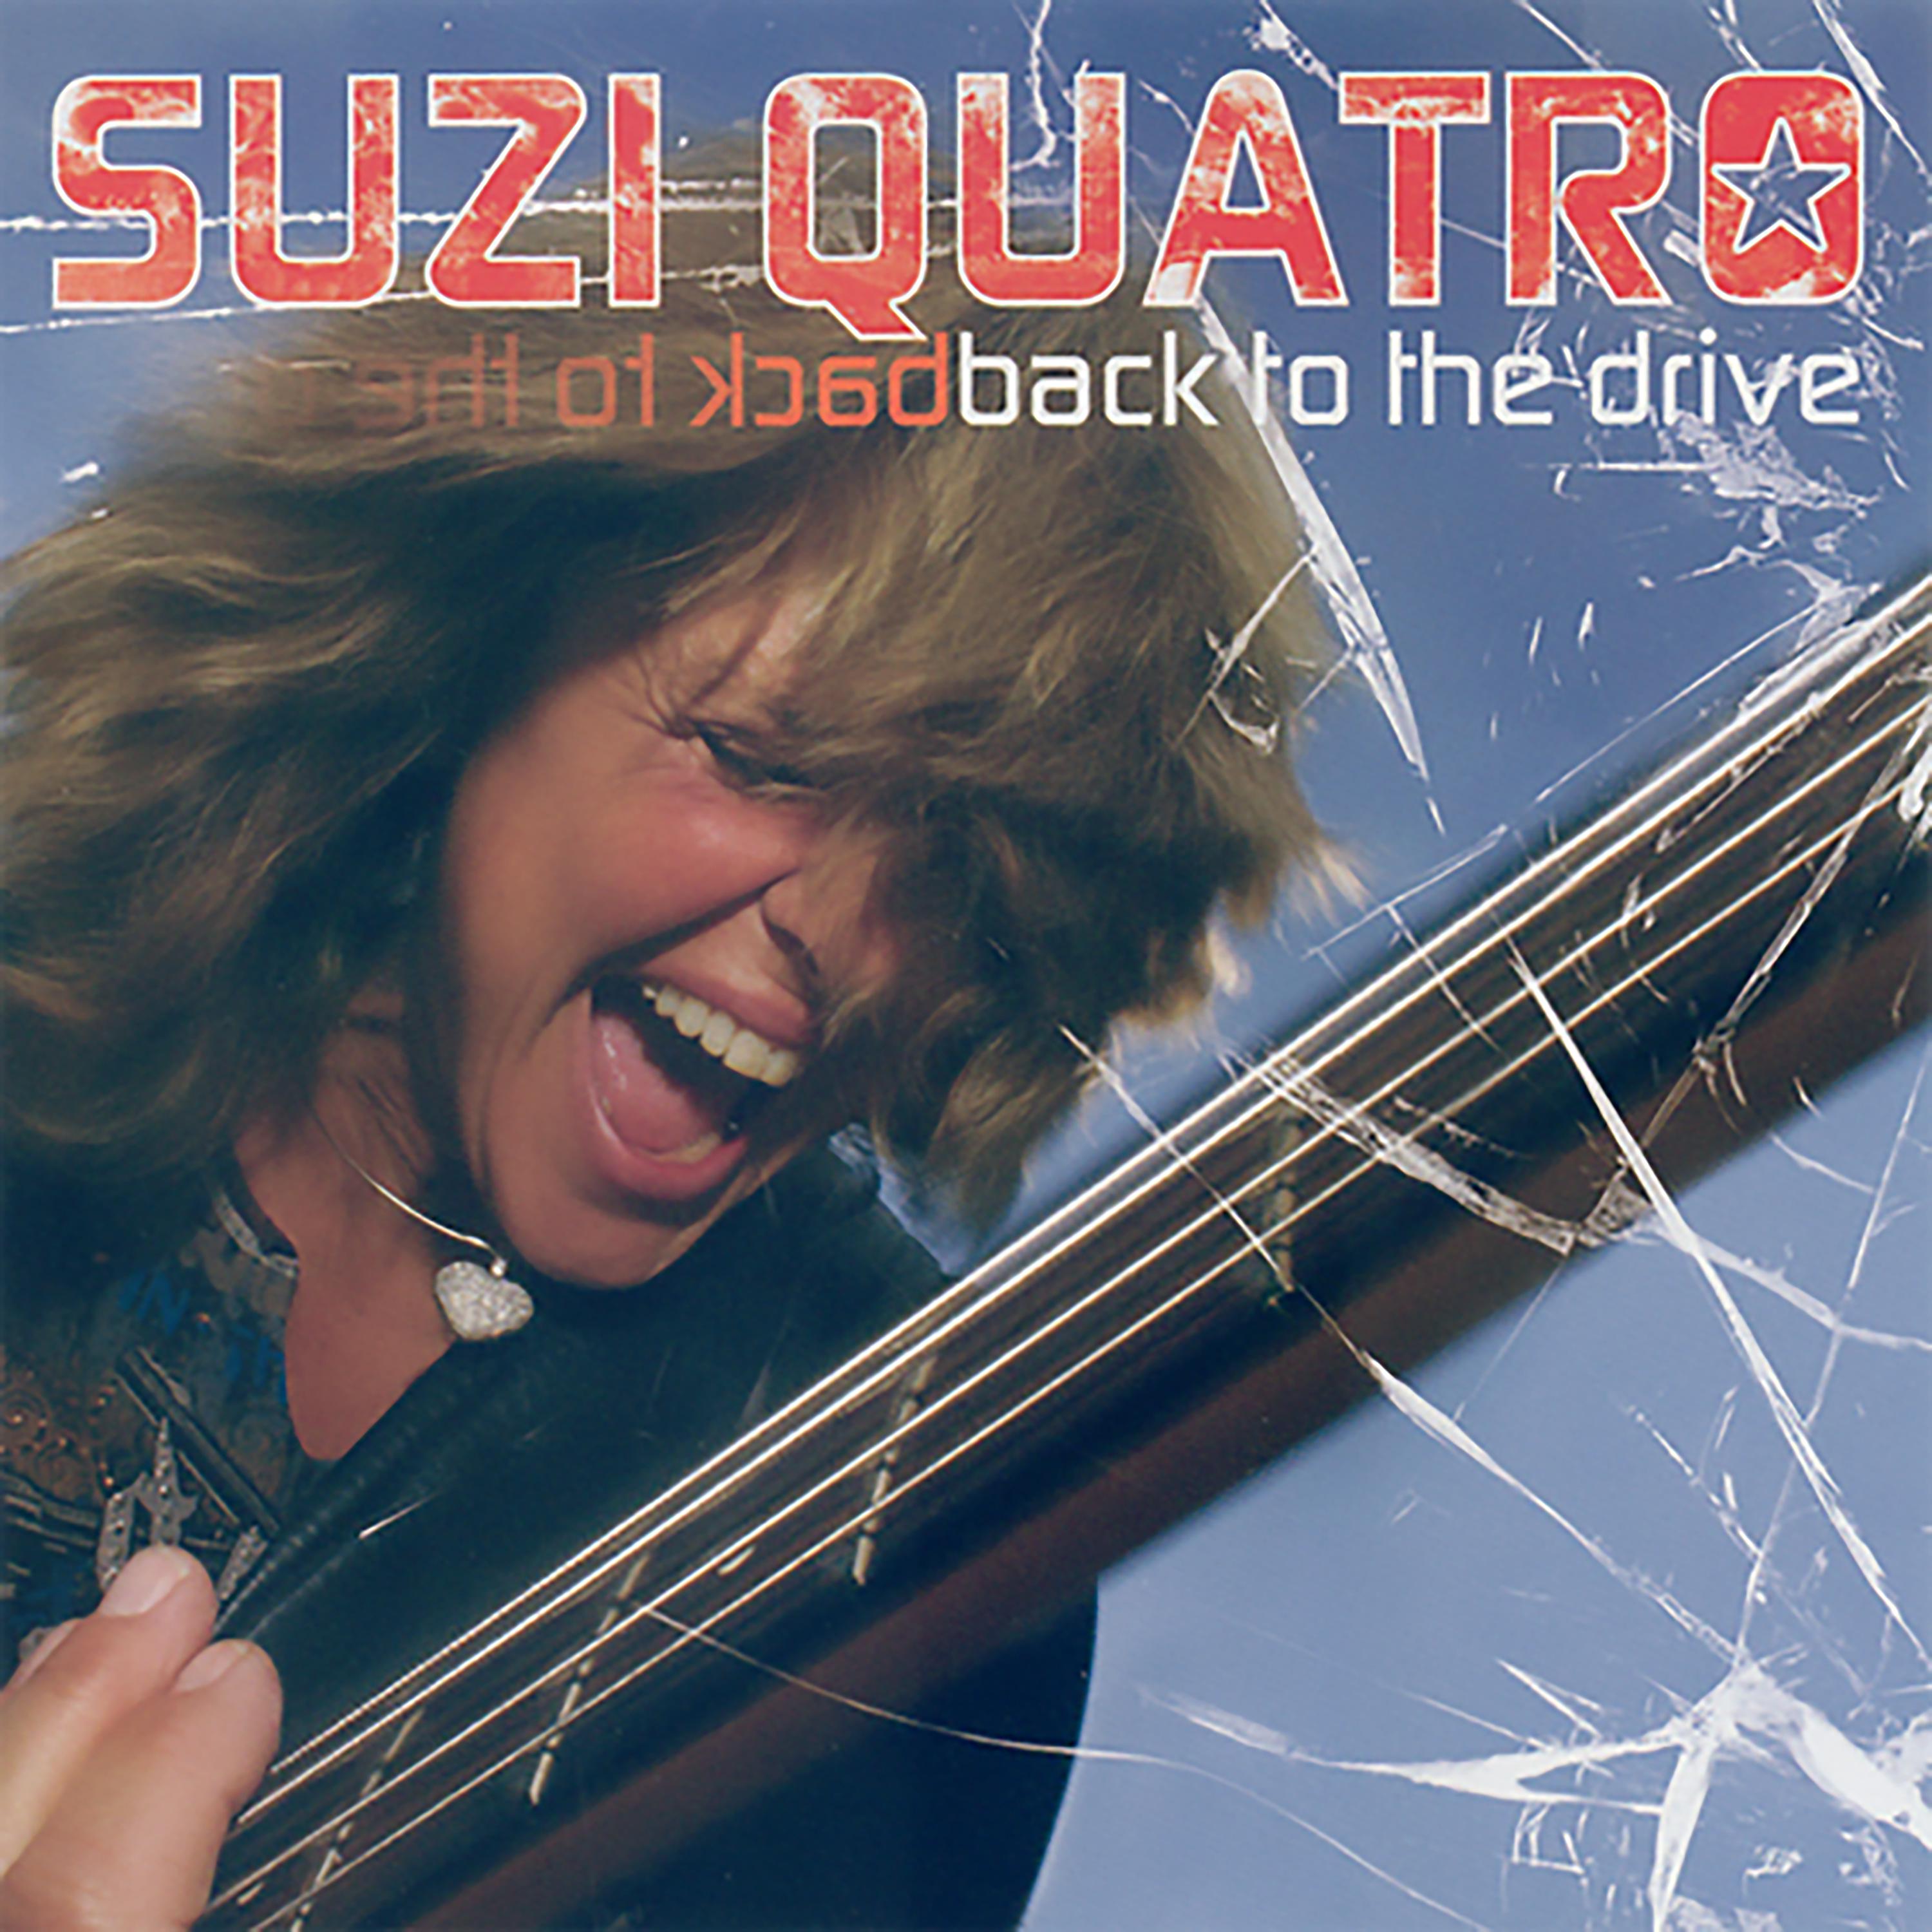 Включи кватро. Suzi quatro - back to the Drive (2005). Back to the Drive Сьюзи кватро. Suzi quatro 2023. Фото обложки альбома Suzi quatro-2006 - back to the Drive.